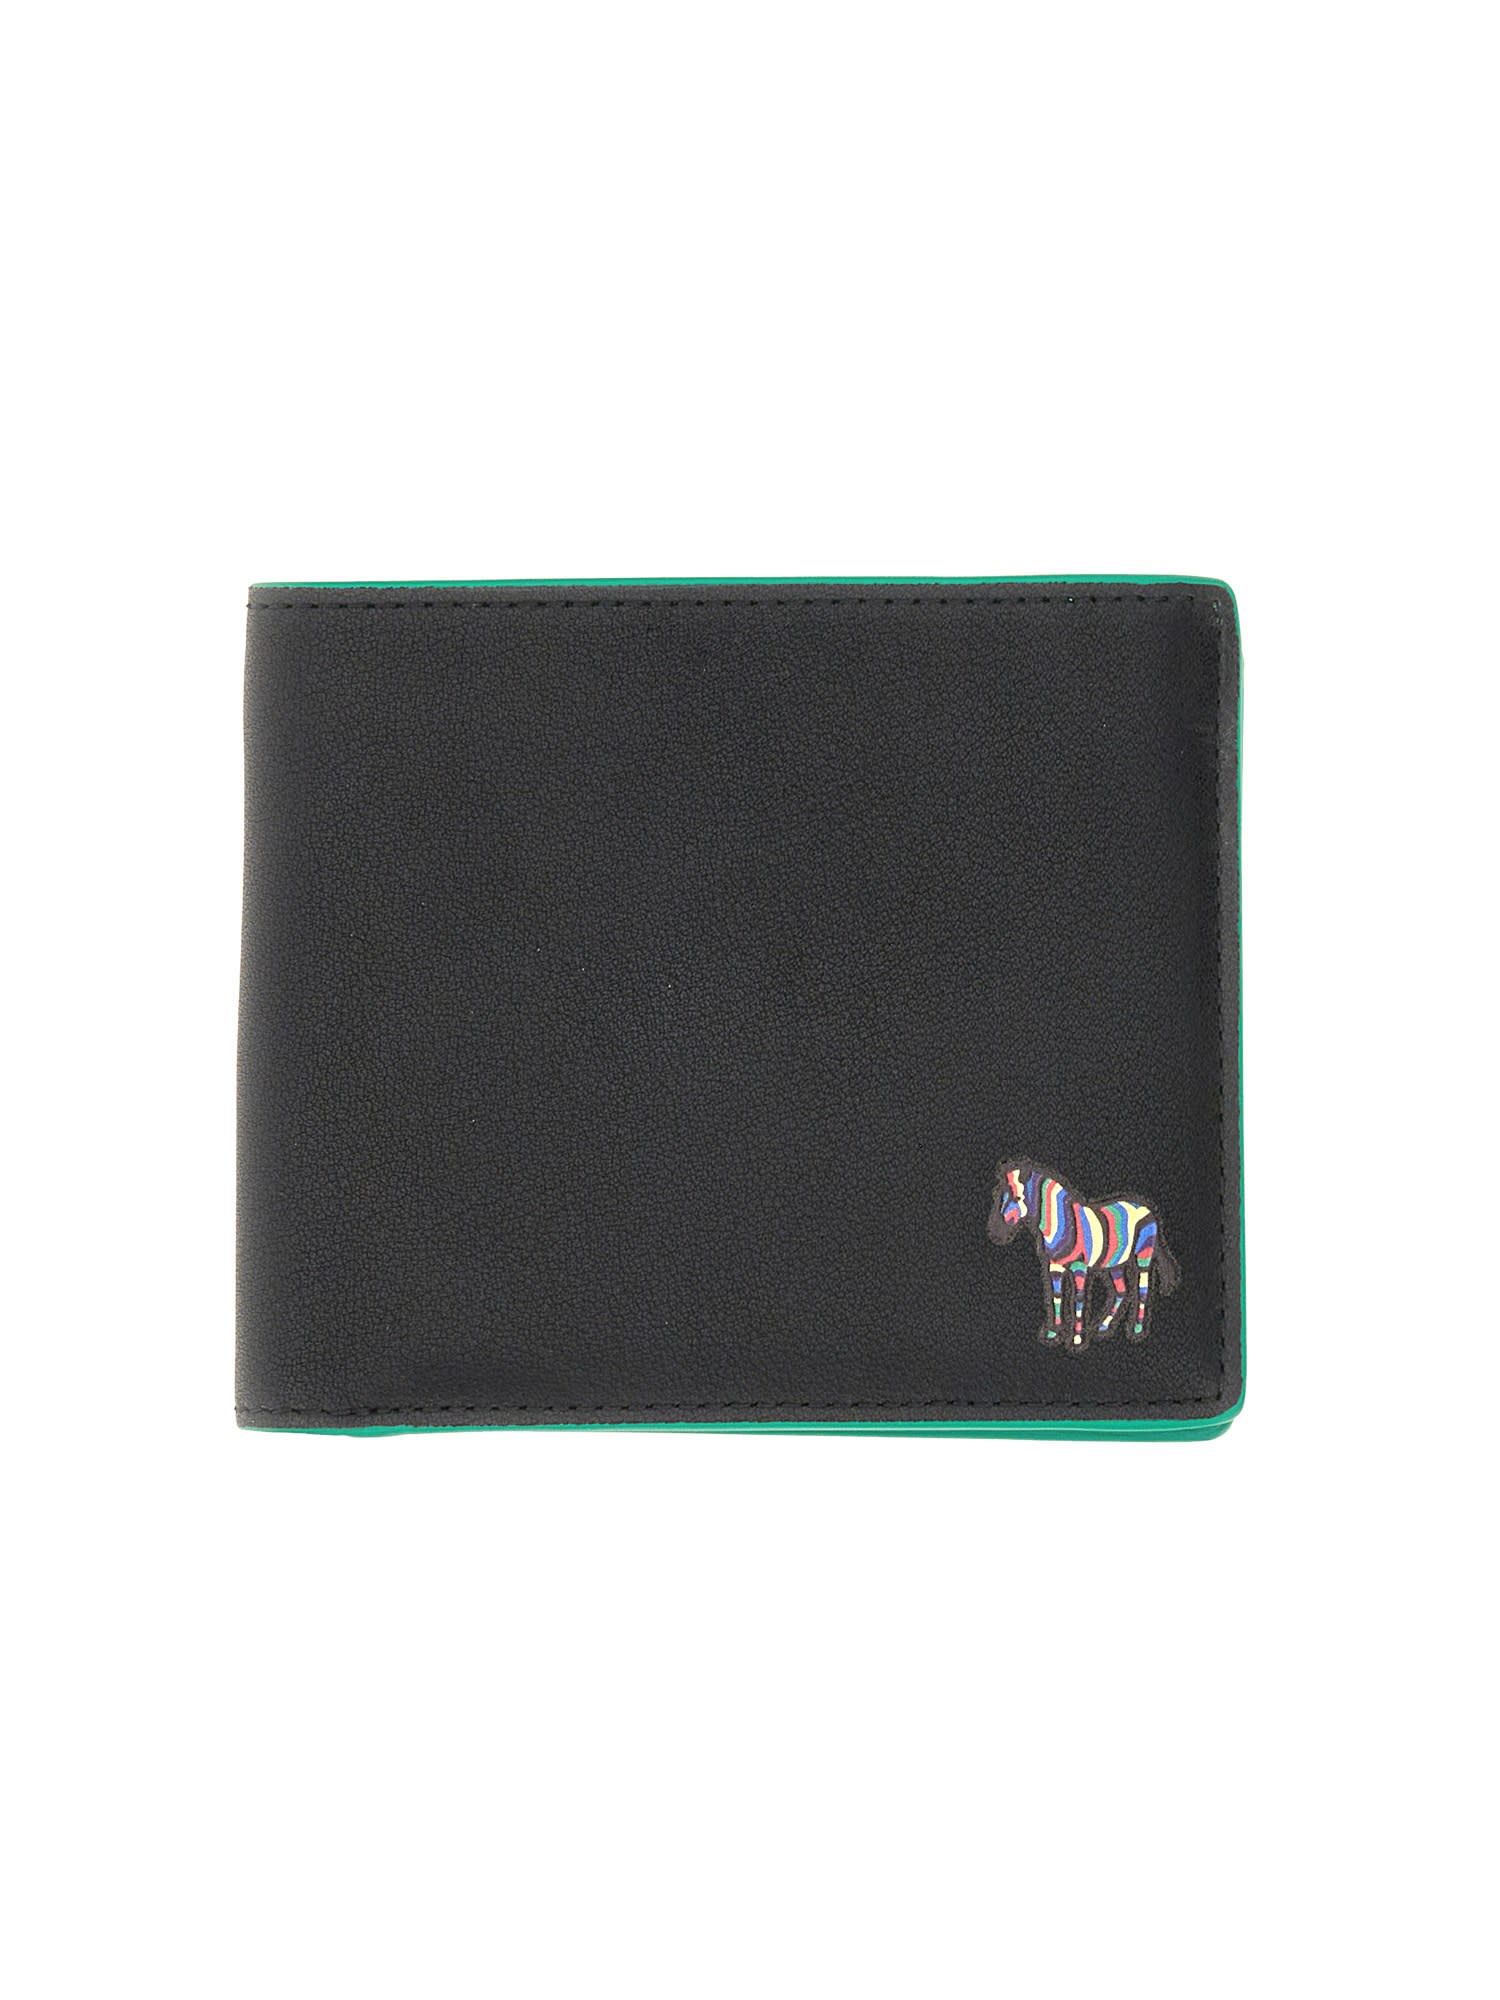 PS by Paul Smith Bi-fold Wallet zebra Stripe